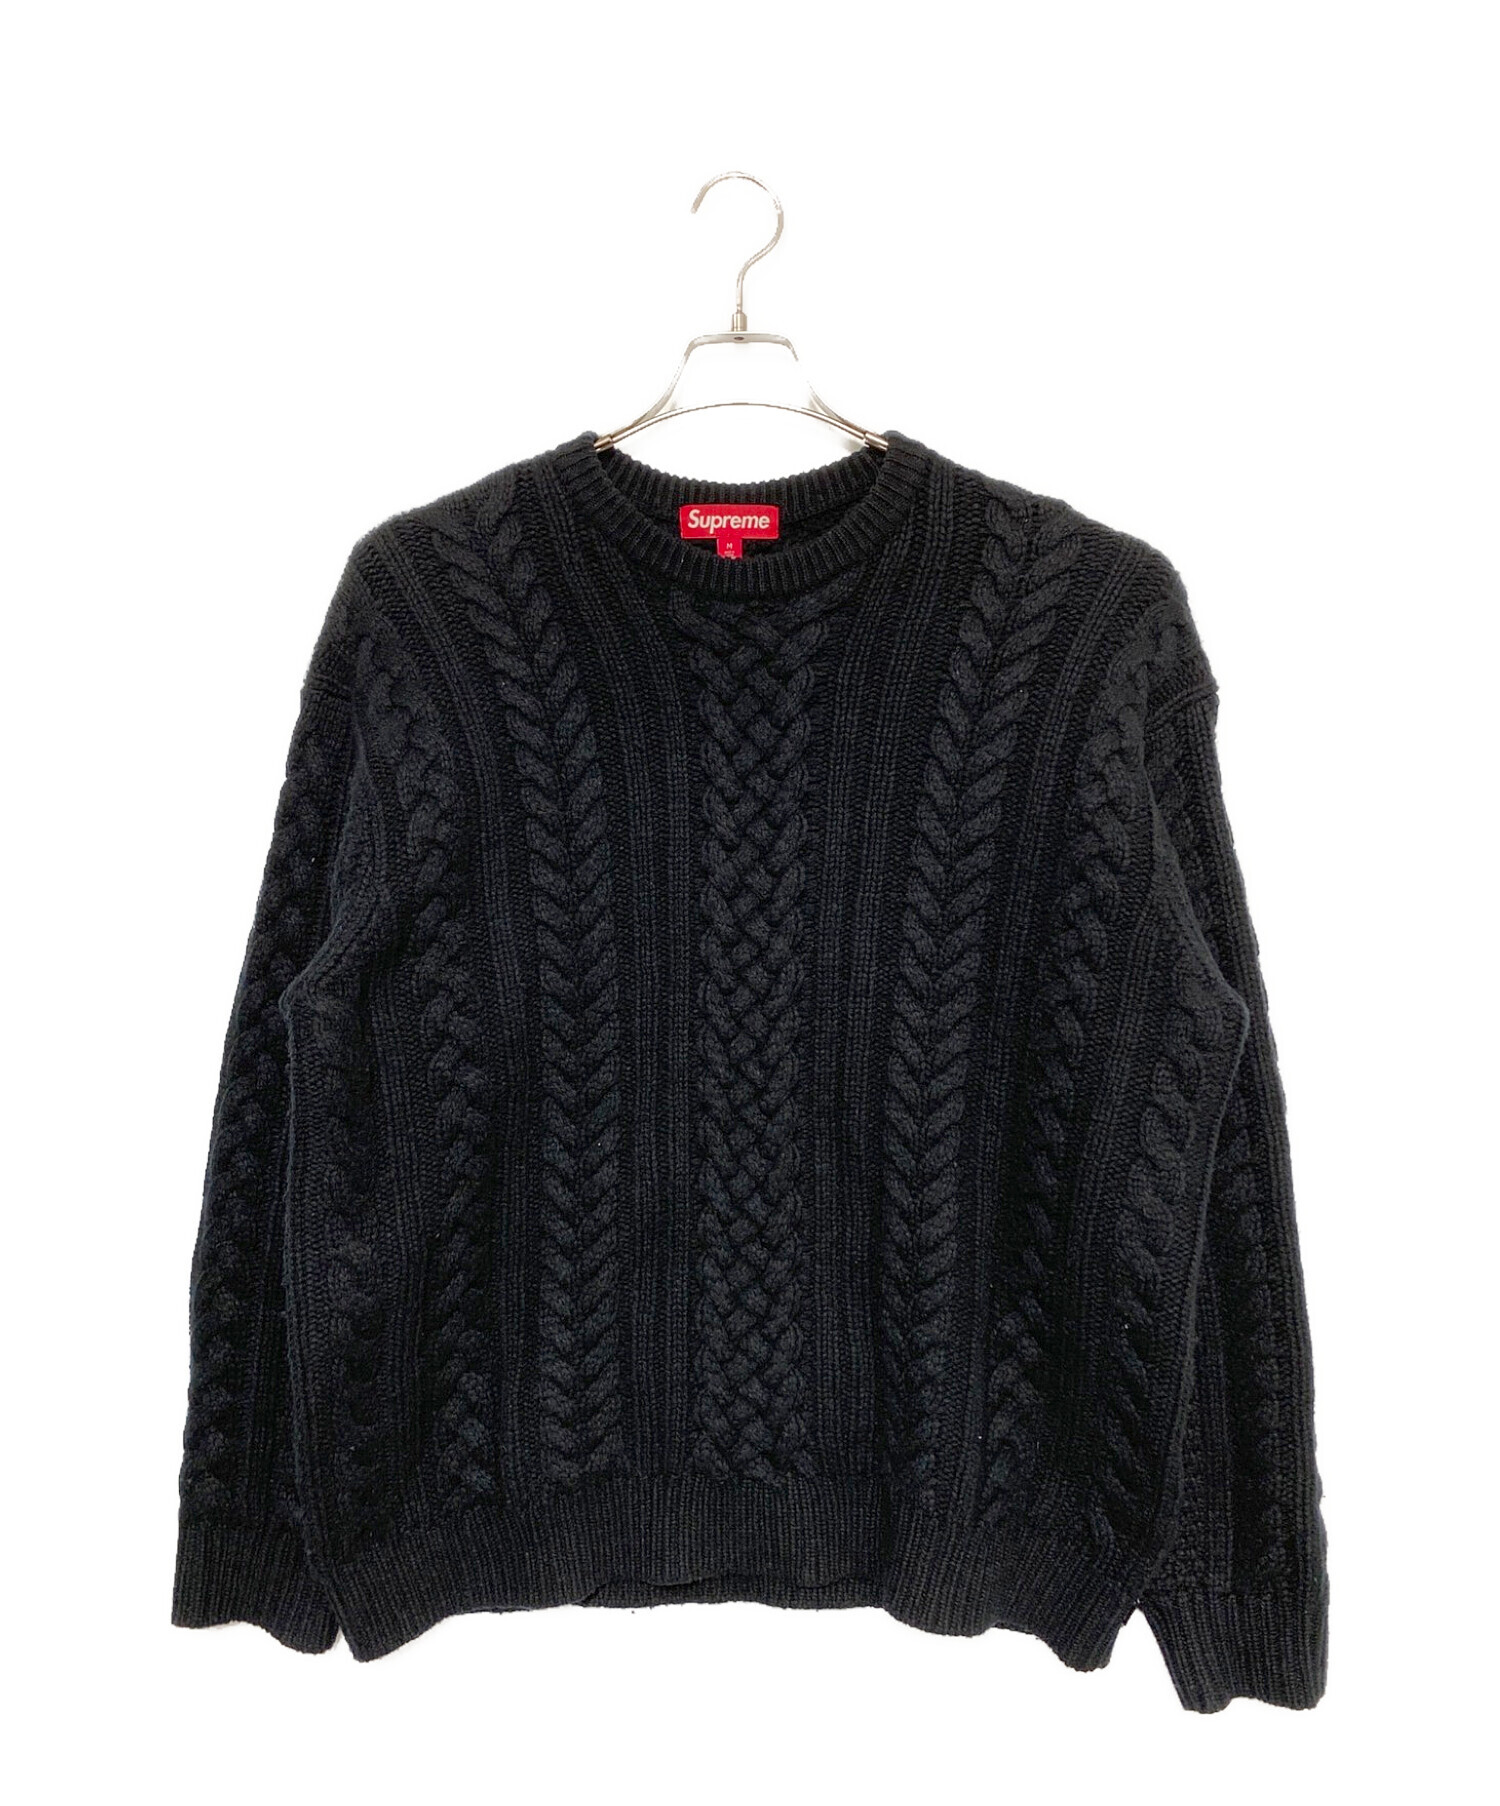 SUPREME (シュプリーム) Applique Cable Knit Sweater ブラック サイズ:M